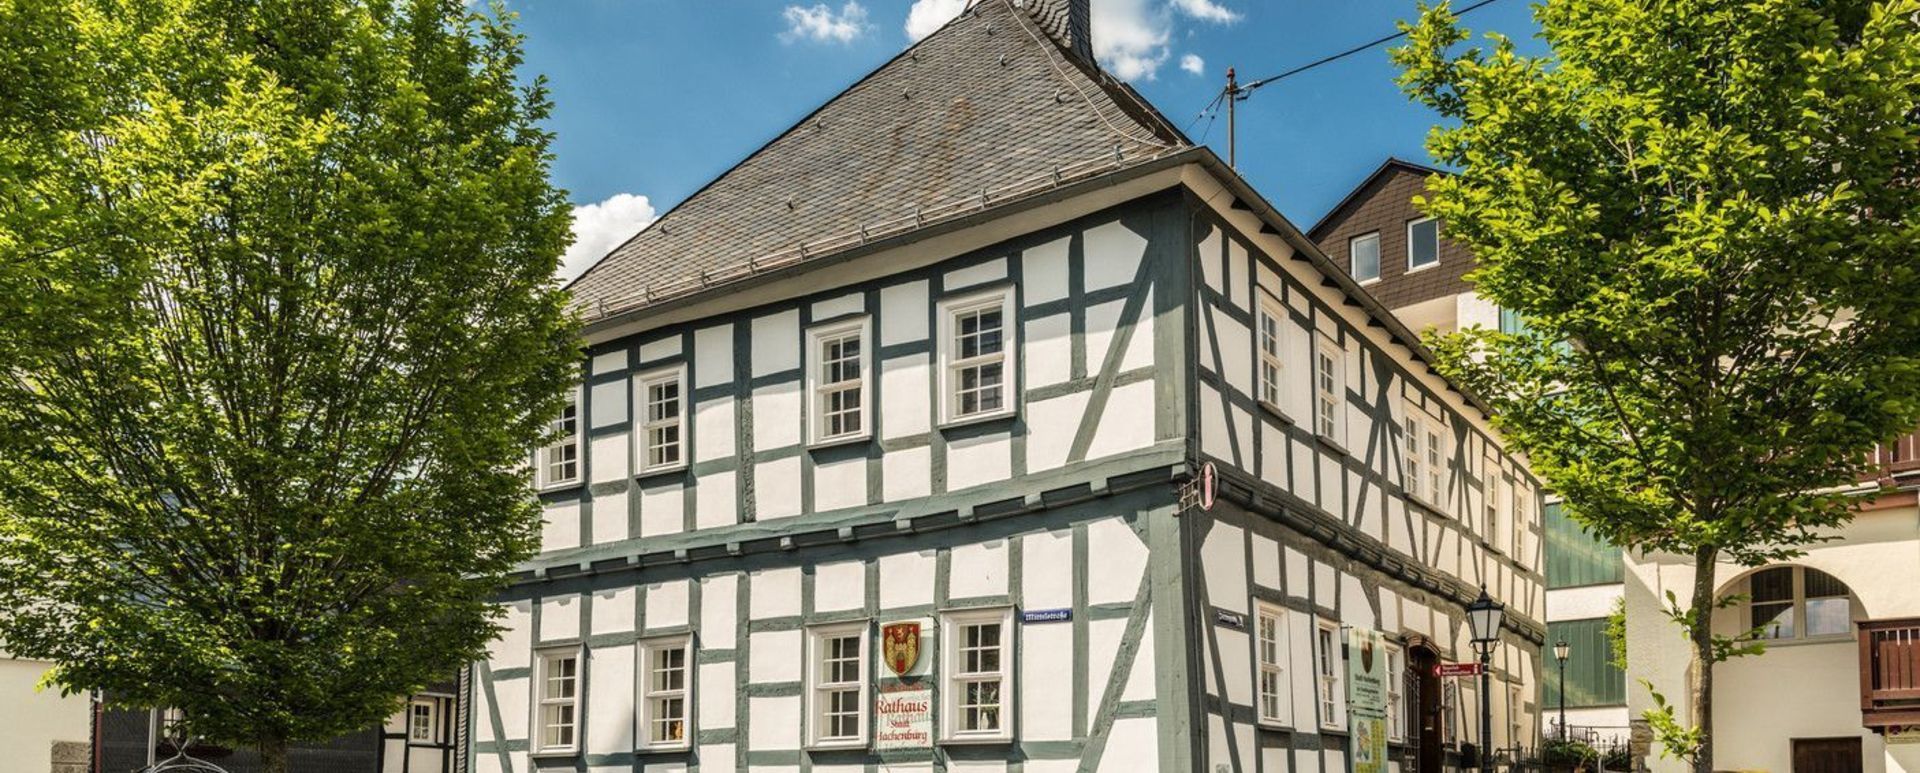 Das Alte Rathaus in Hachenburg mit einer Dauerausstellung zur Stadtgeschichte im Gewölbekeller